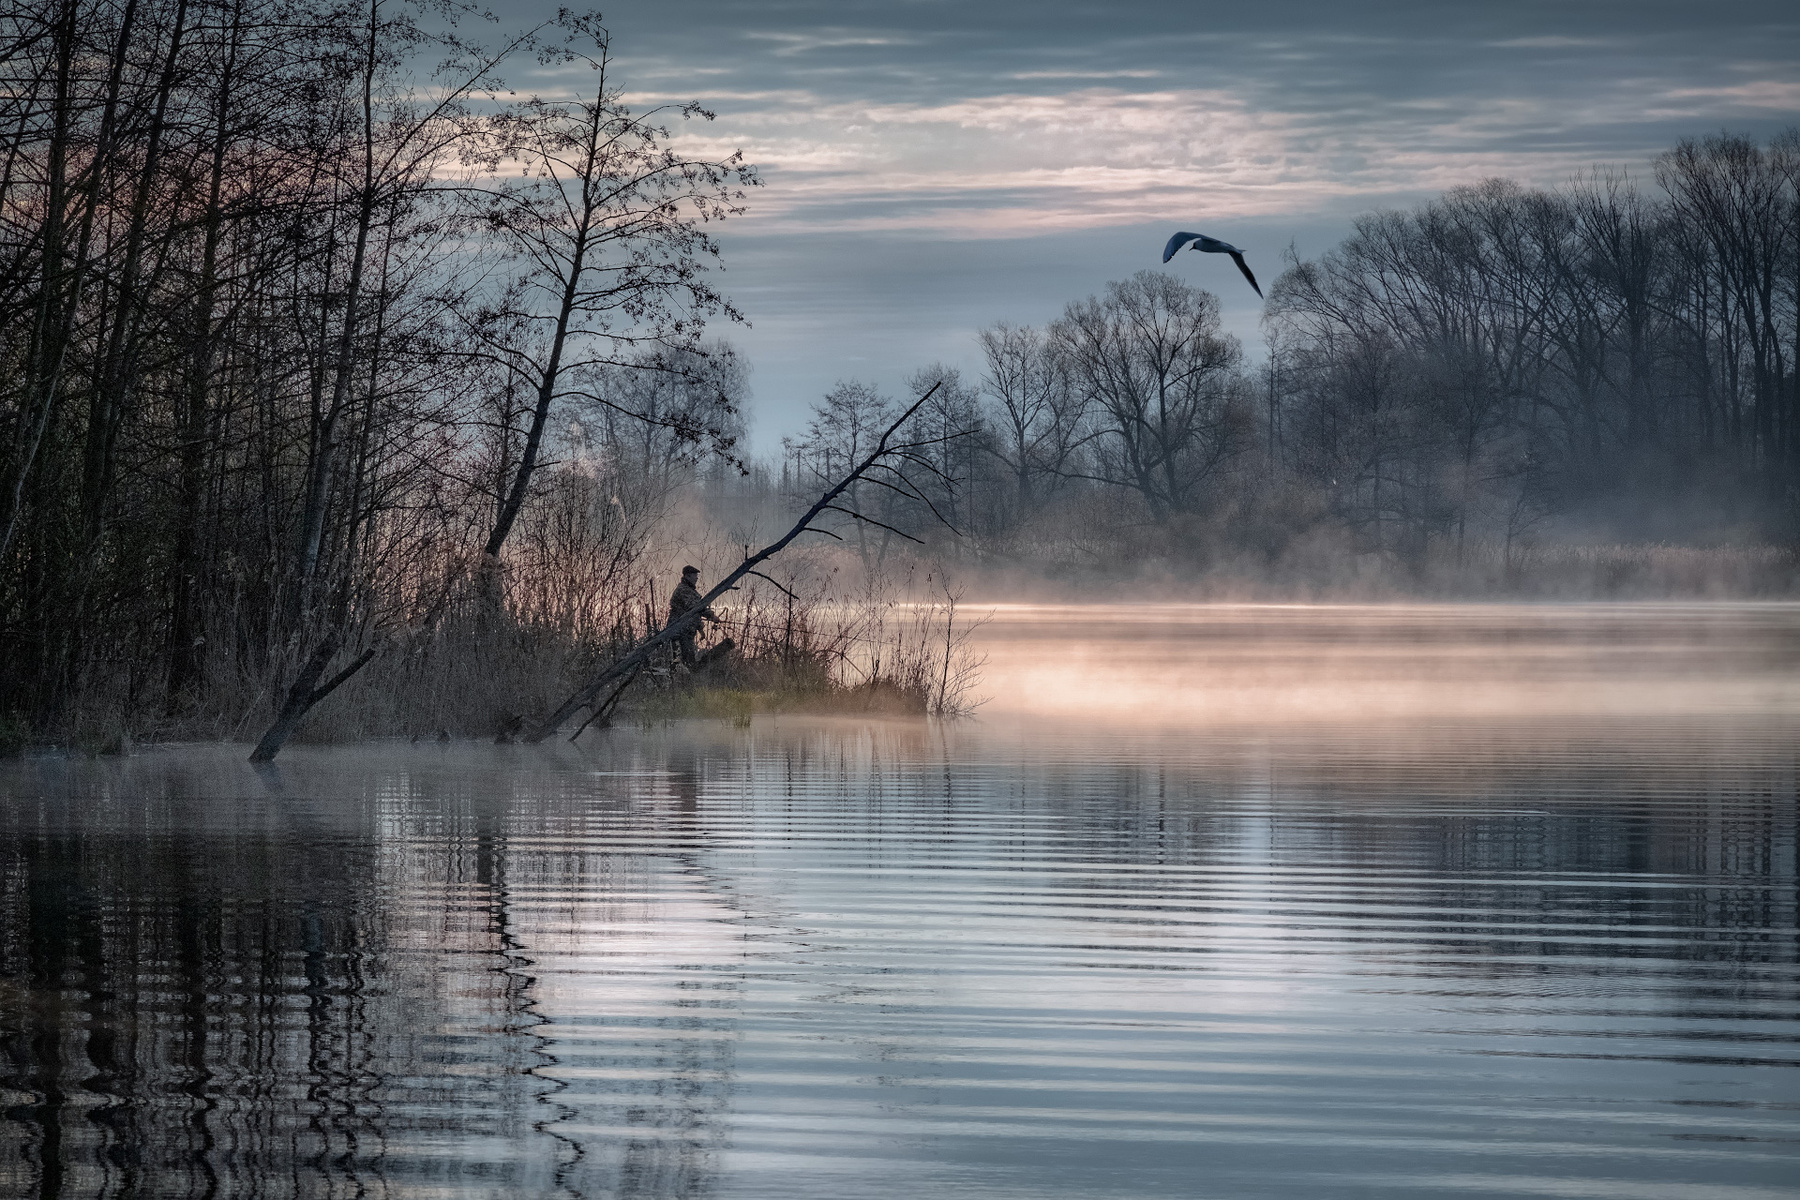 Удочка в кустах шатура озеро лес утро рассвет рыбак чайка деревья туман дымка пейзаж